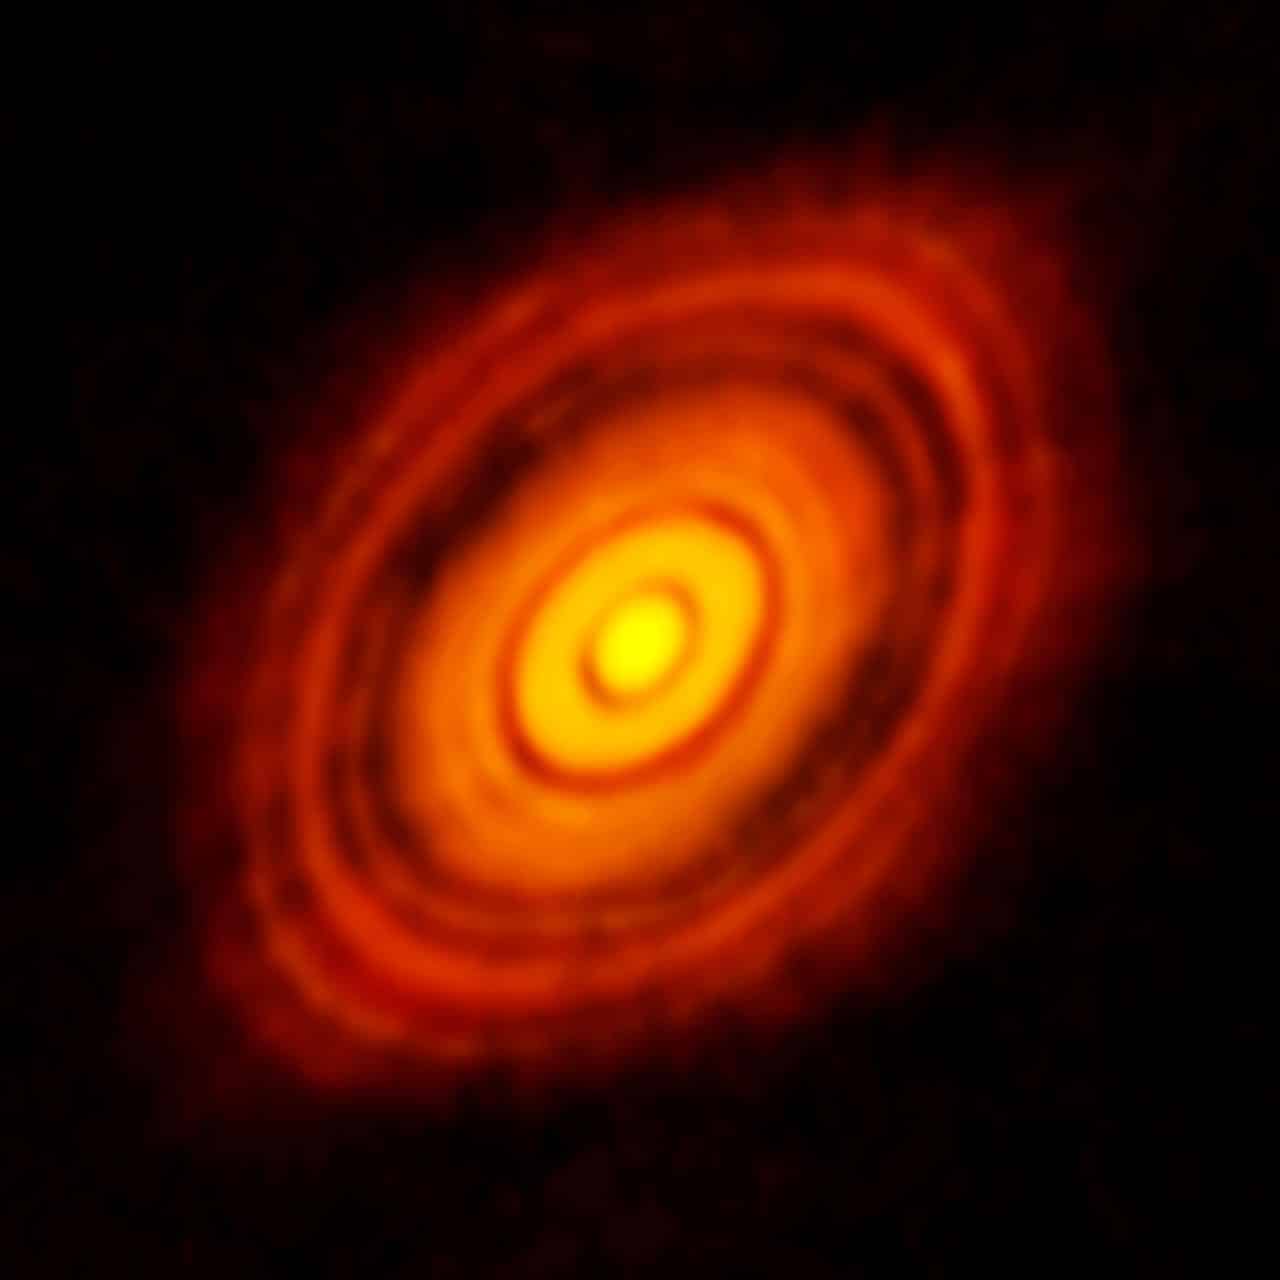 זוהי התמונה החדה ביותר שצולמה אי פעם על ידי ALMA - חדה יותר ממה שמושג באופן שגרתי באור נראה עם טלסקופ החלל האבל של נאס"א / ESA. הוא מראה את הדיסקה הקדם-פלנטרית המקיפה את הכוכב הצעיר HL Tauri. תצפיות חדשות אלה של אלמה חושפות תת-מבנים בתוך הדיסקה שמעולם לא נראו קודם לכן ואף מראות את מיקומם האפשרי של כוכבי לכת הנוצרים בכתמים הכהים בתוך המערכת. Credit:
ALMA (ESO/NAOJ/NRAO)

